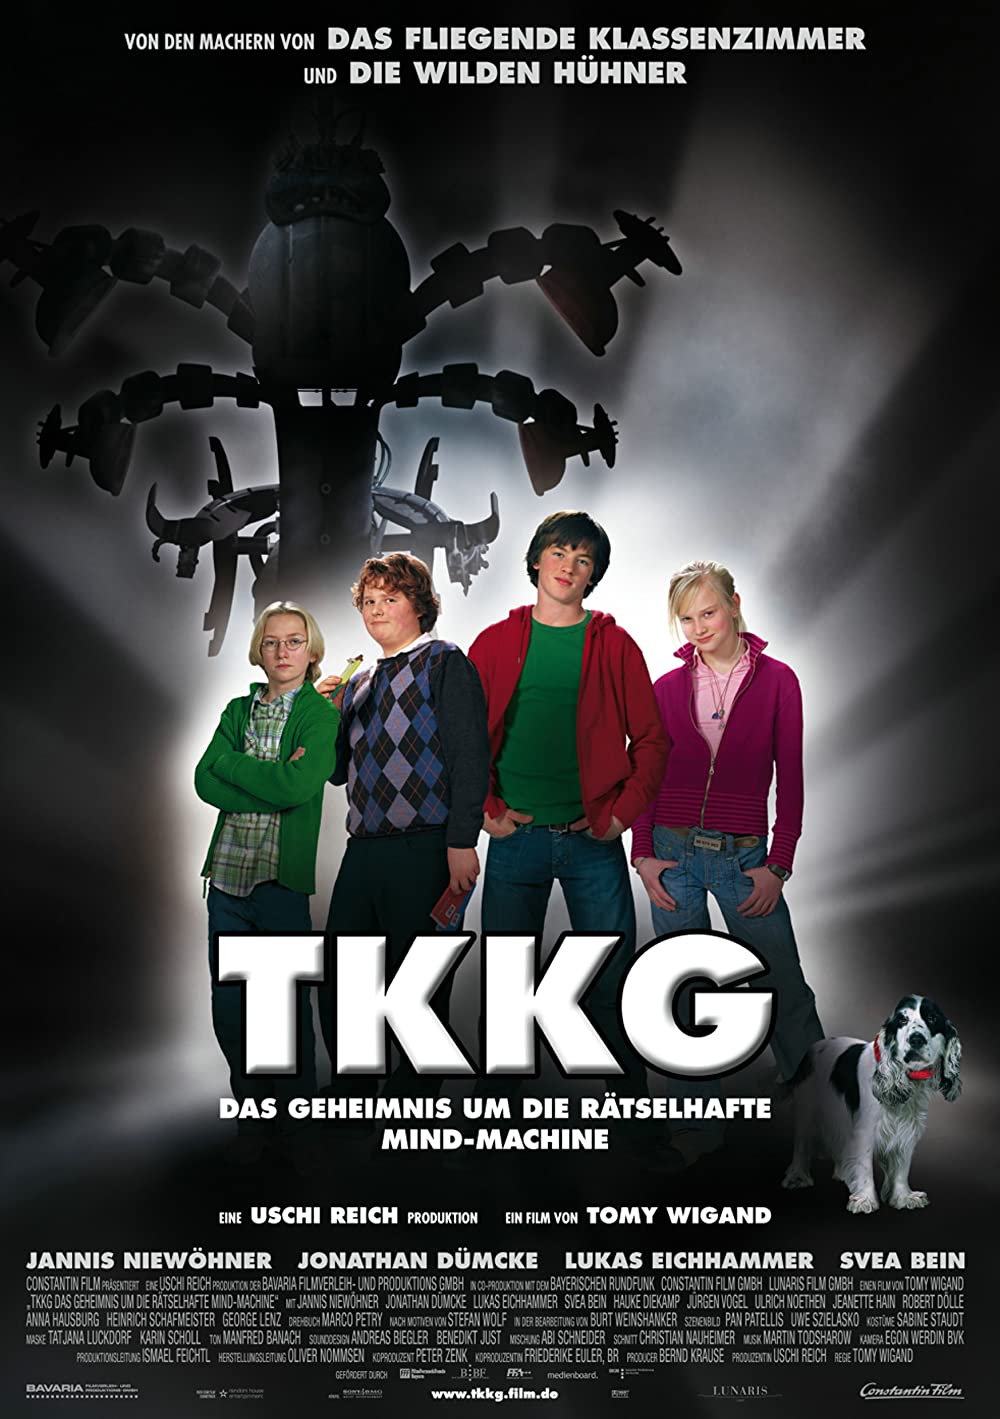 TKKG - Das Geheimnis um die rätselhafte Mind-Machine (2006)